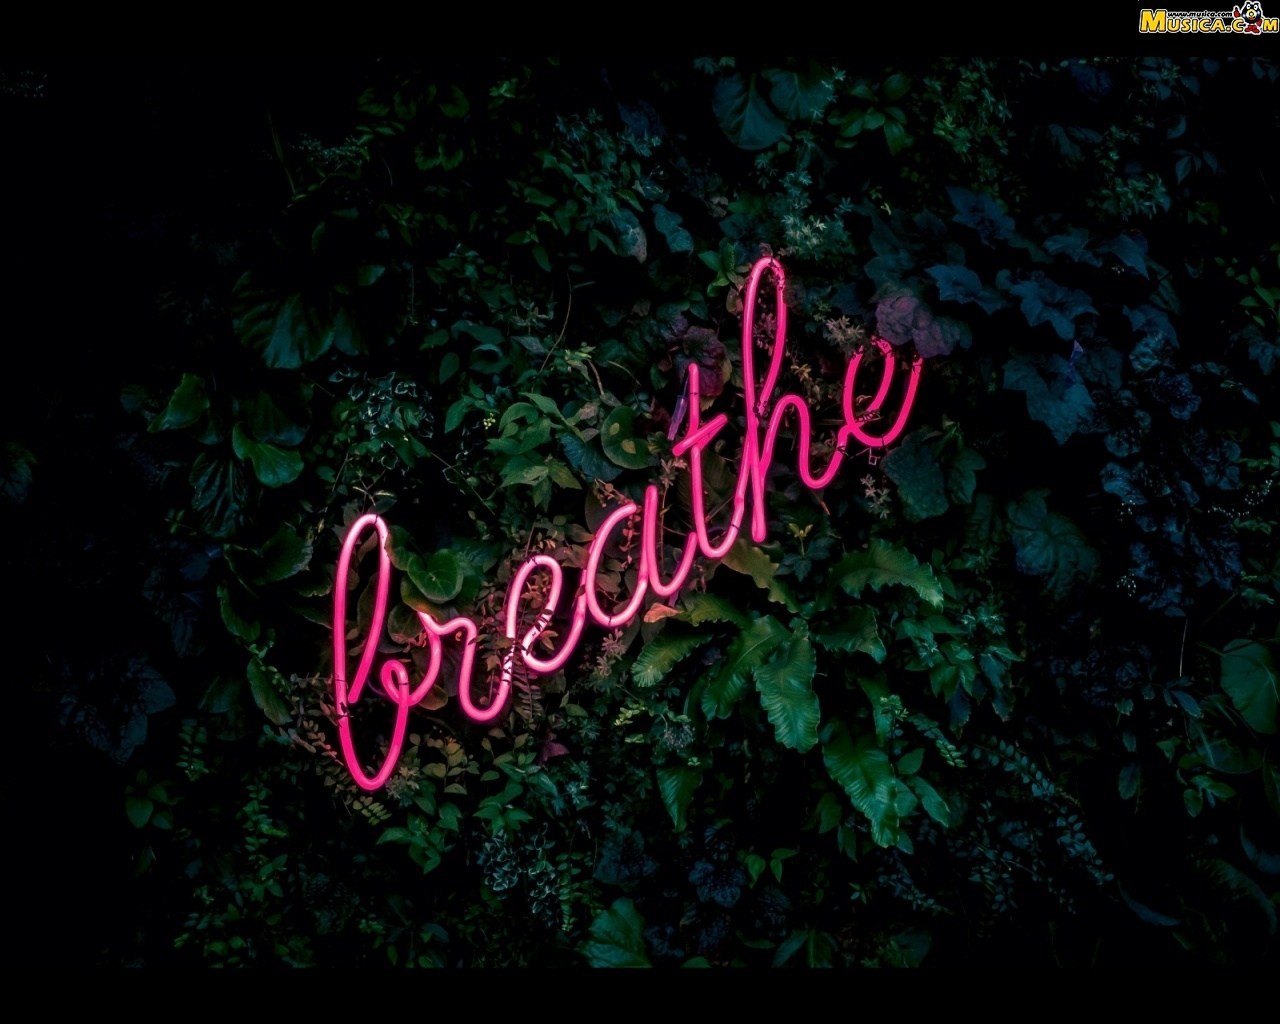 Fondo de pantalla de Breathe